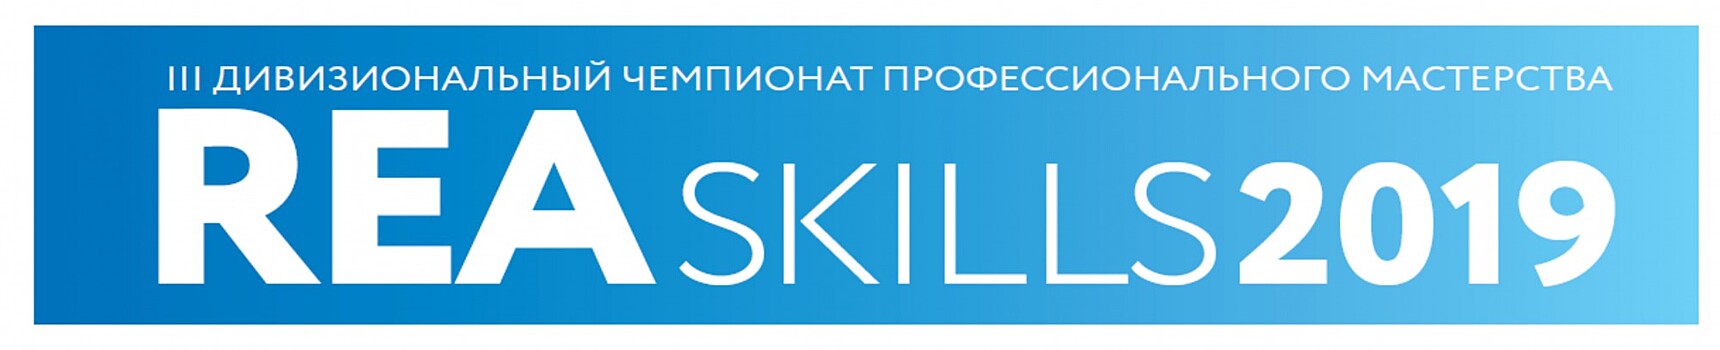 Специалисты Калининской АЭС уже в третий раз примут участие в конкурсе профессионального мастерства по методологии WorldSkills